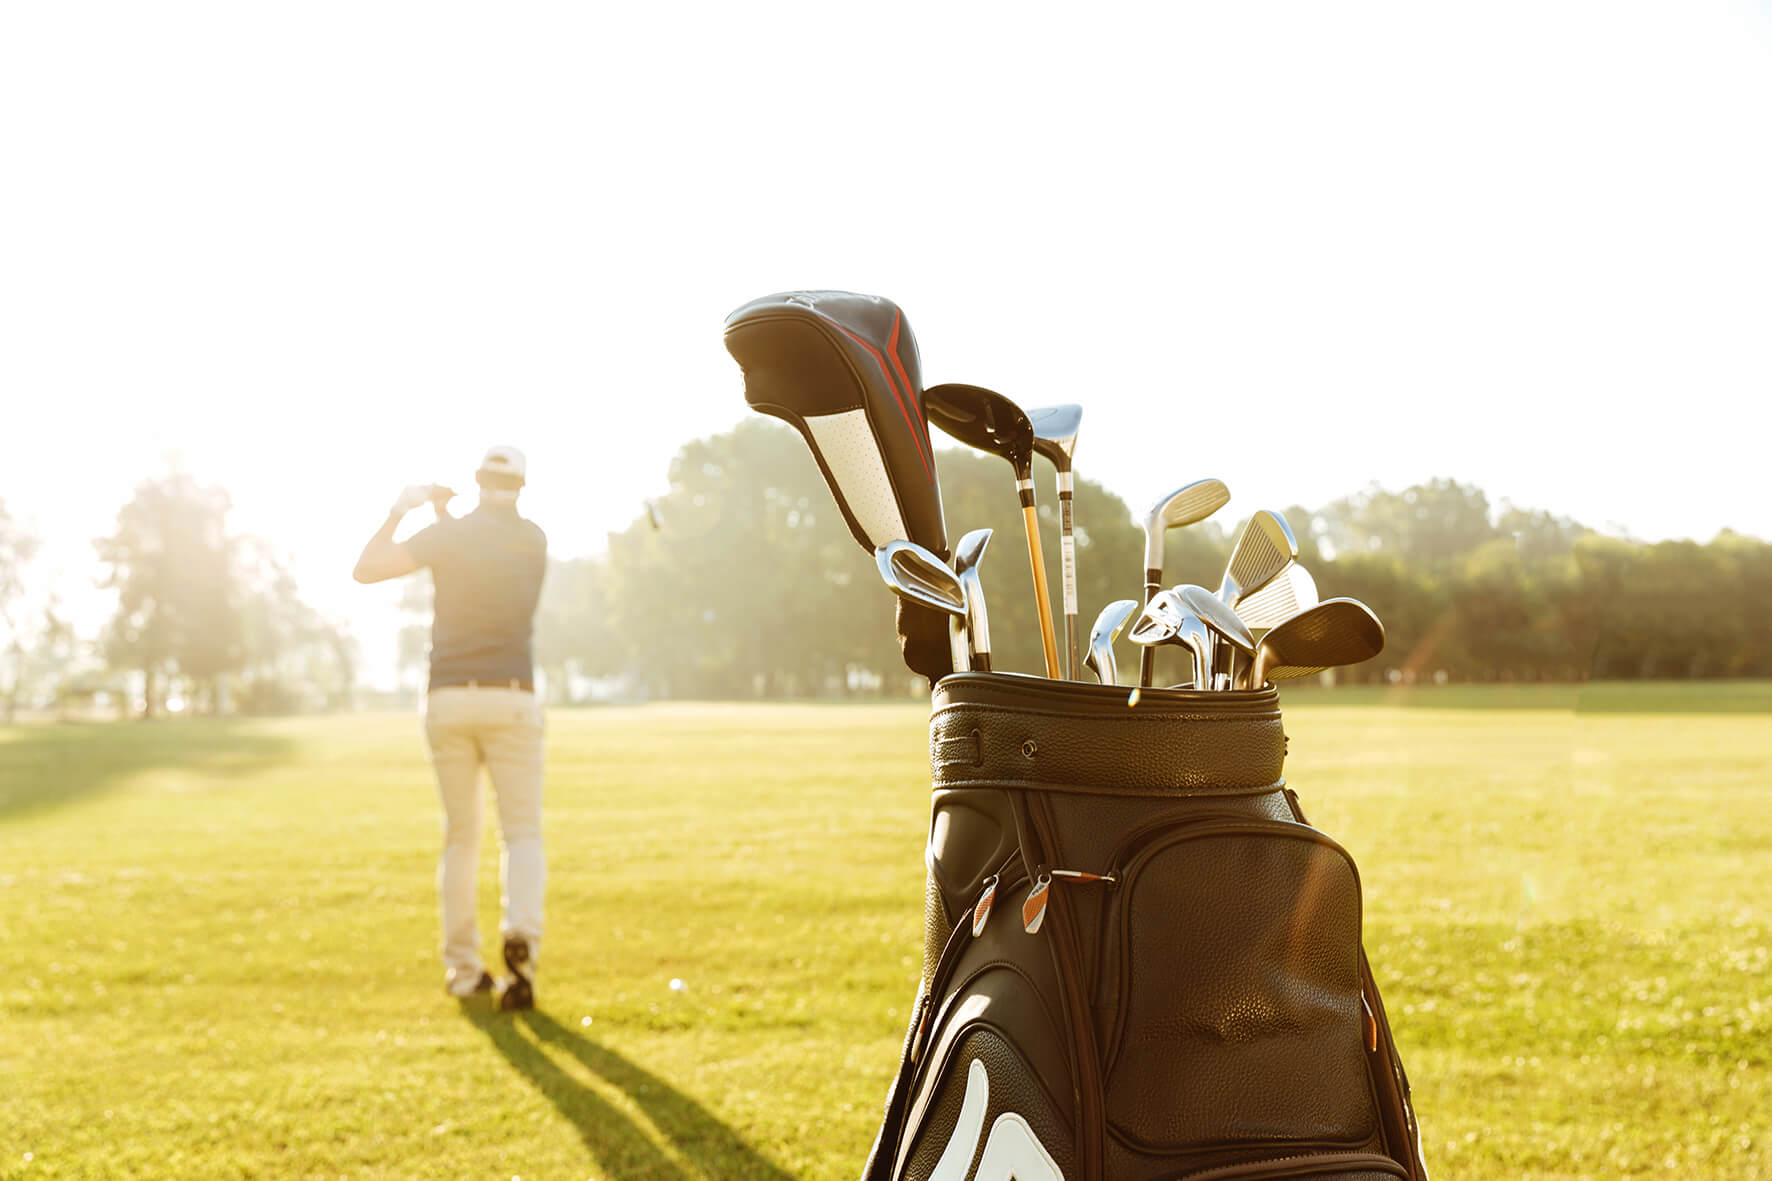 Das Bild zeigt eine Golftasche im Vordergrund, gefüllt mit einer Auswahl an Schlägern, auf einem sonnendurchfluteten Golfplatz. Im Hintergrund steht ein Golfer in einer entspannten Pose, der gerade seinen Schlag beobachtet. Er ist bekleidet mit einer Kappe, einem dunklen Poloshirt und hellen Hosen, was auf eine klassische Golfbekleidung hindeutet. Der Golfer scheint in die Ferne zu schauen, möglicherweise verfolgt er den Flug des Golfballs. Die Szene ist in warmes, goldenes Licht getaucht. Der Hintergrund ist weich fokussiert und zeigt die weite, gepflegte Rasenfläche des Golfplatzes, umgeben von einigen Bäumen am Horizont.